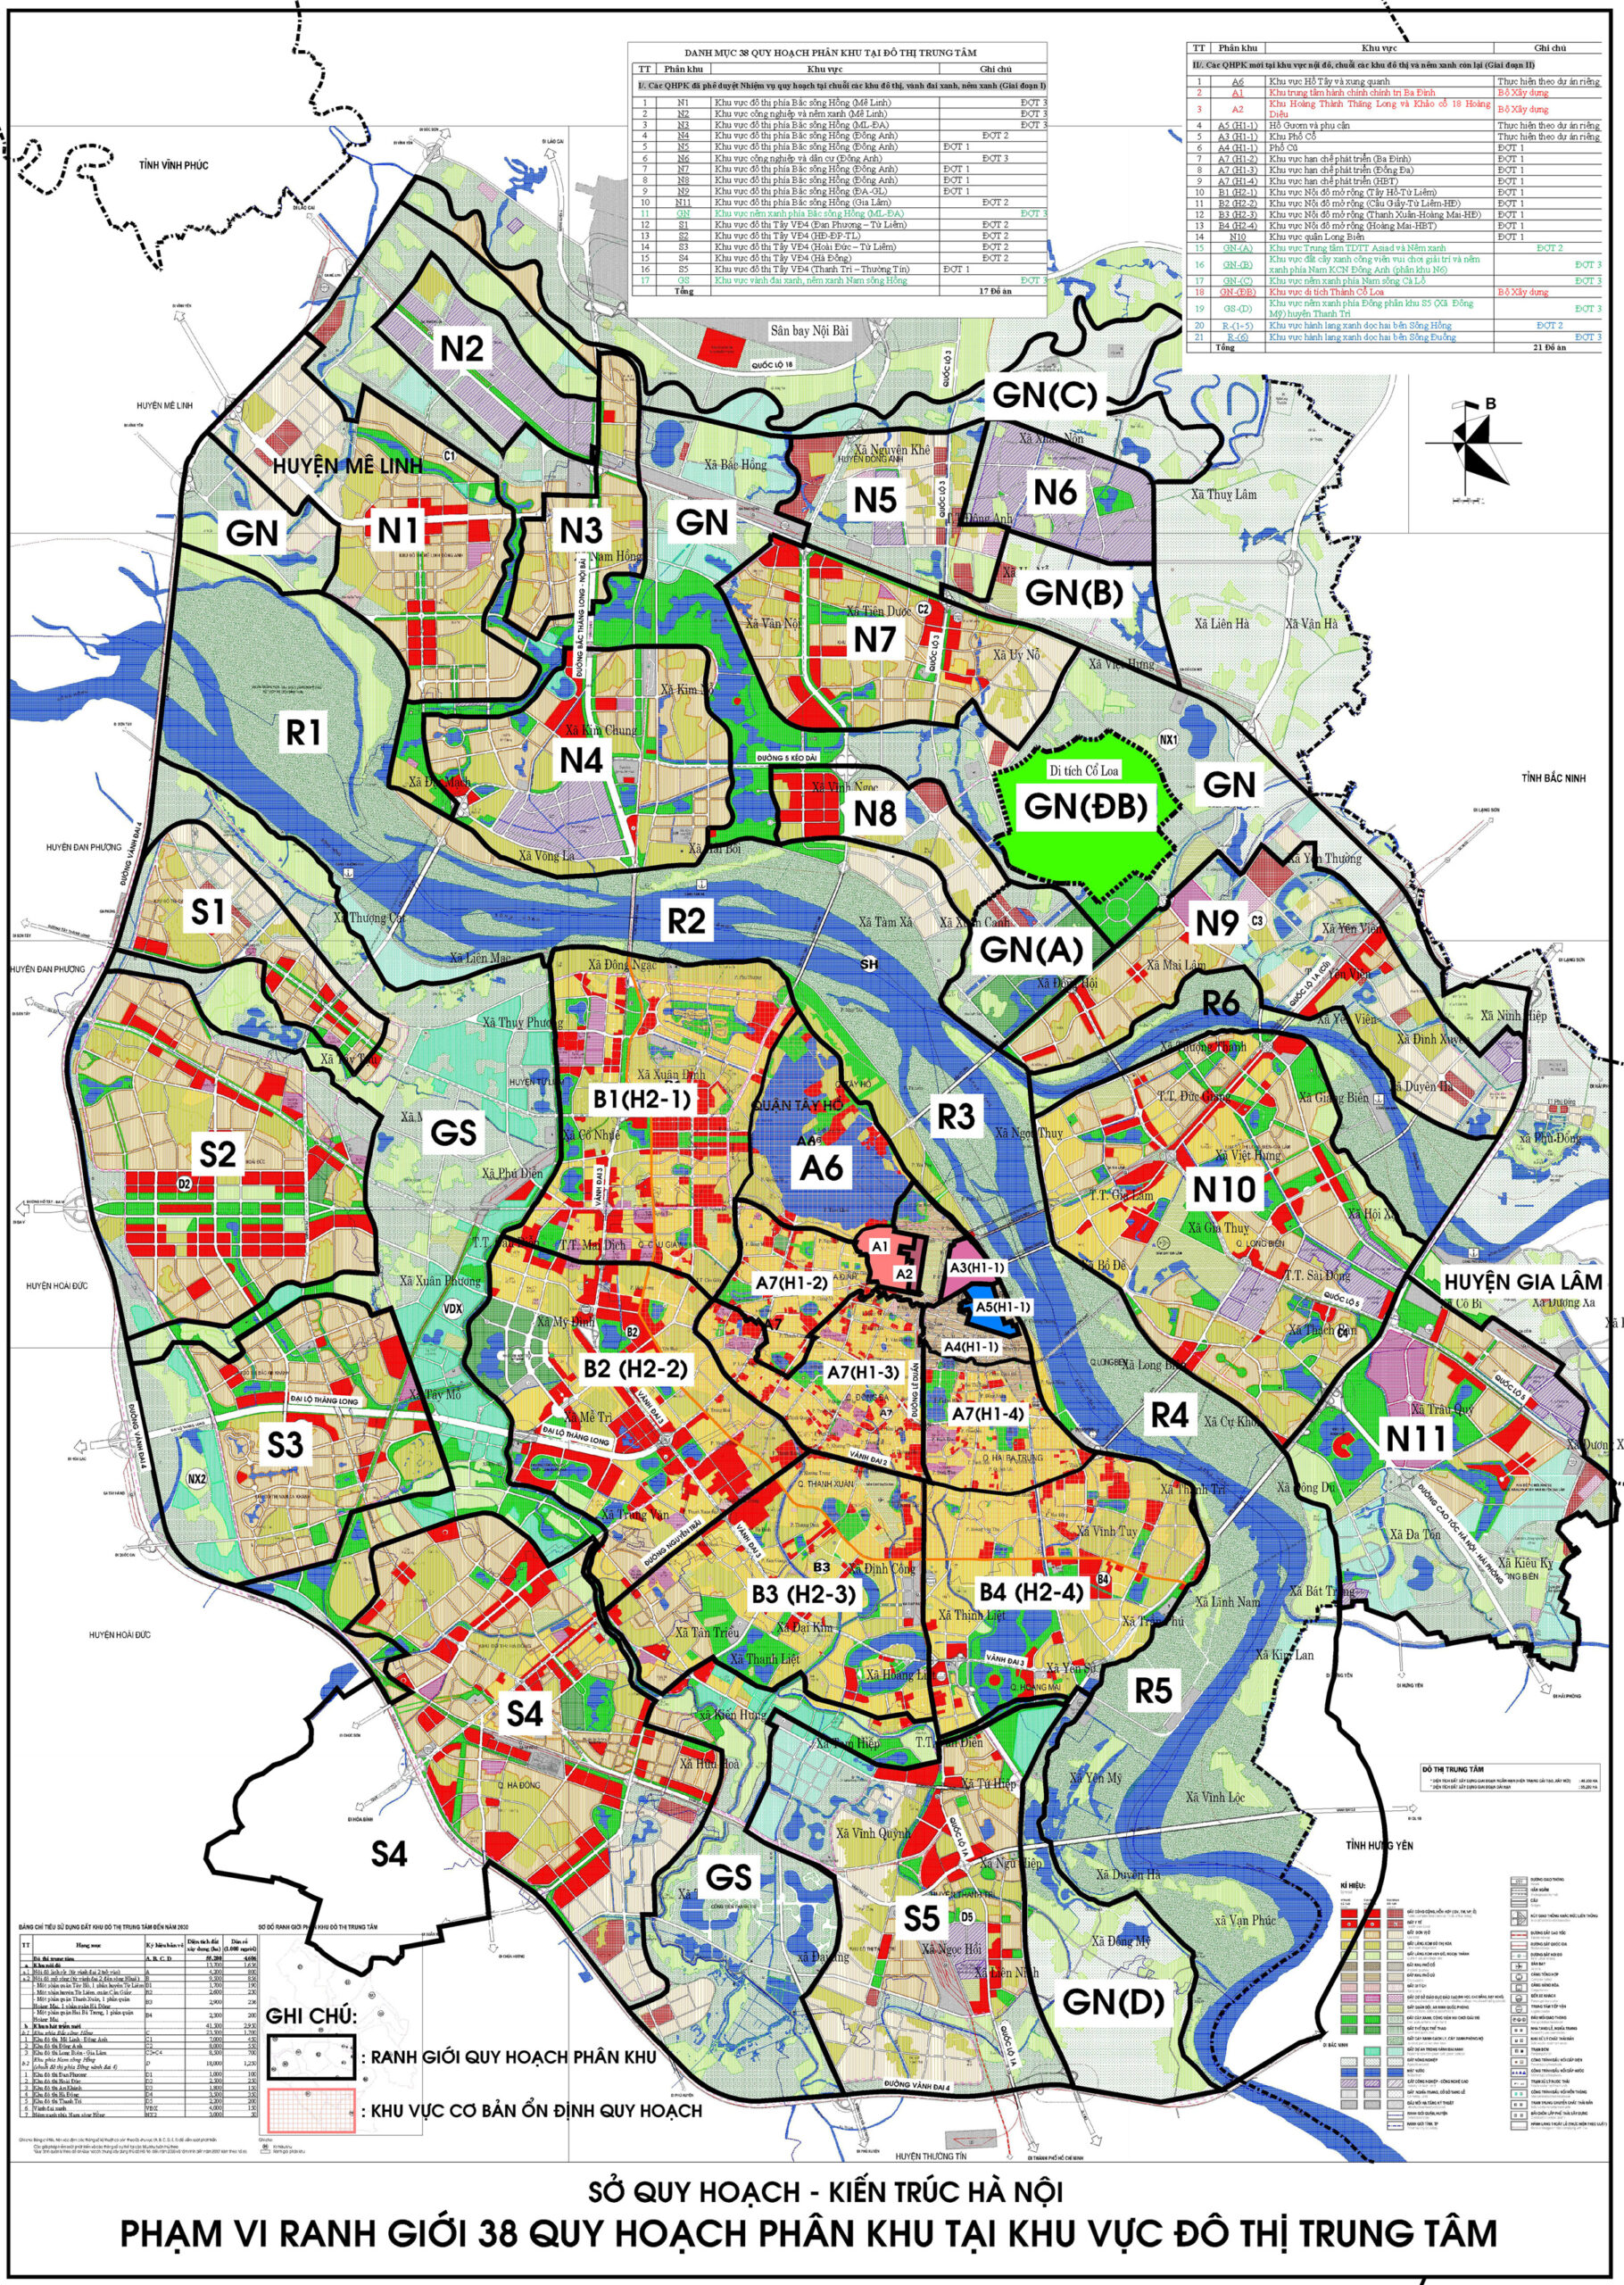 Bản đồ quy hoạch Hà Nội năm 2024 đã được thiết kế bằng phần mềm autocad hiện đại, giúp cho việc lập kế hoạch phát triển thành phố trở nên dễ dàng và chính xác hơn bao giờ hết. Bạn sẽ được khám phá những khu vực mới được quy hoạch như trung tâm kinh tế mới hay khu đô thị hạng A với những bản vẽ rõ nét và chi tiết.